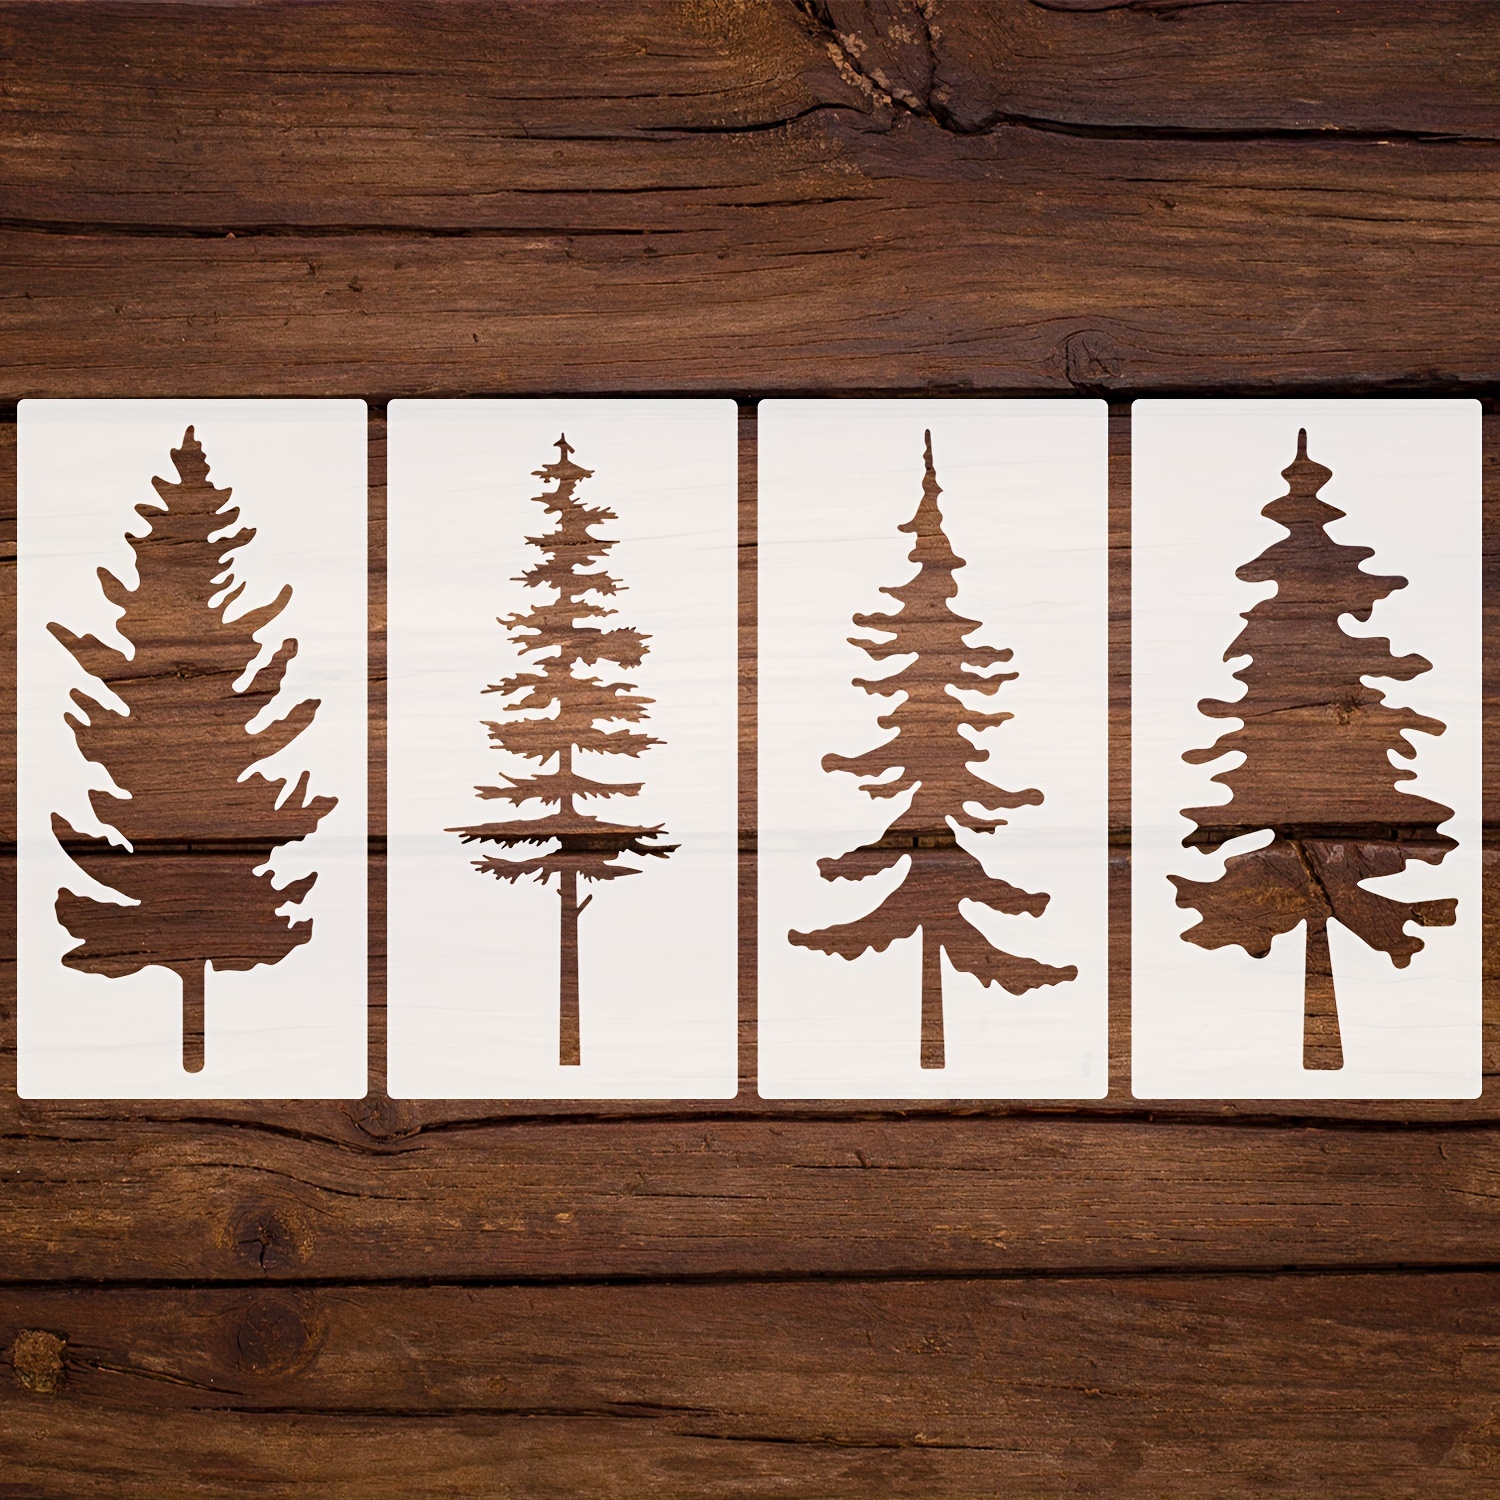 tall pine tree drawing